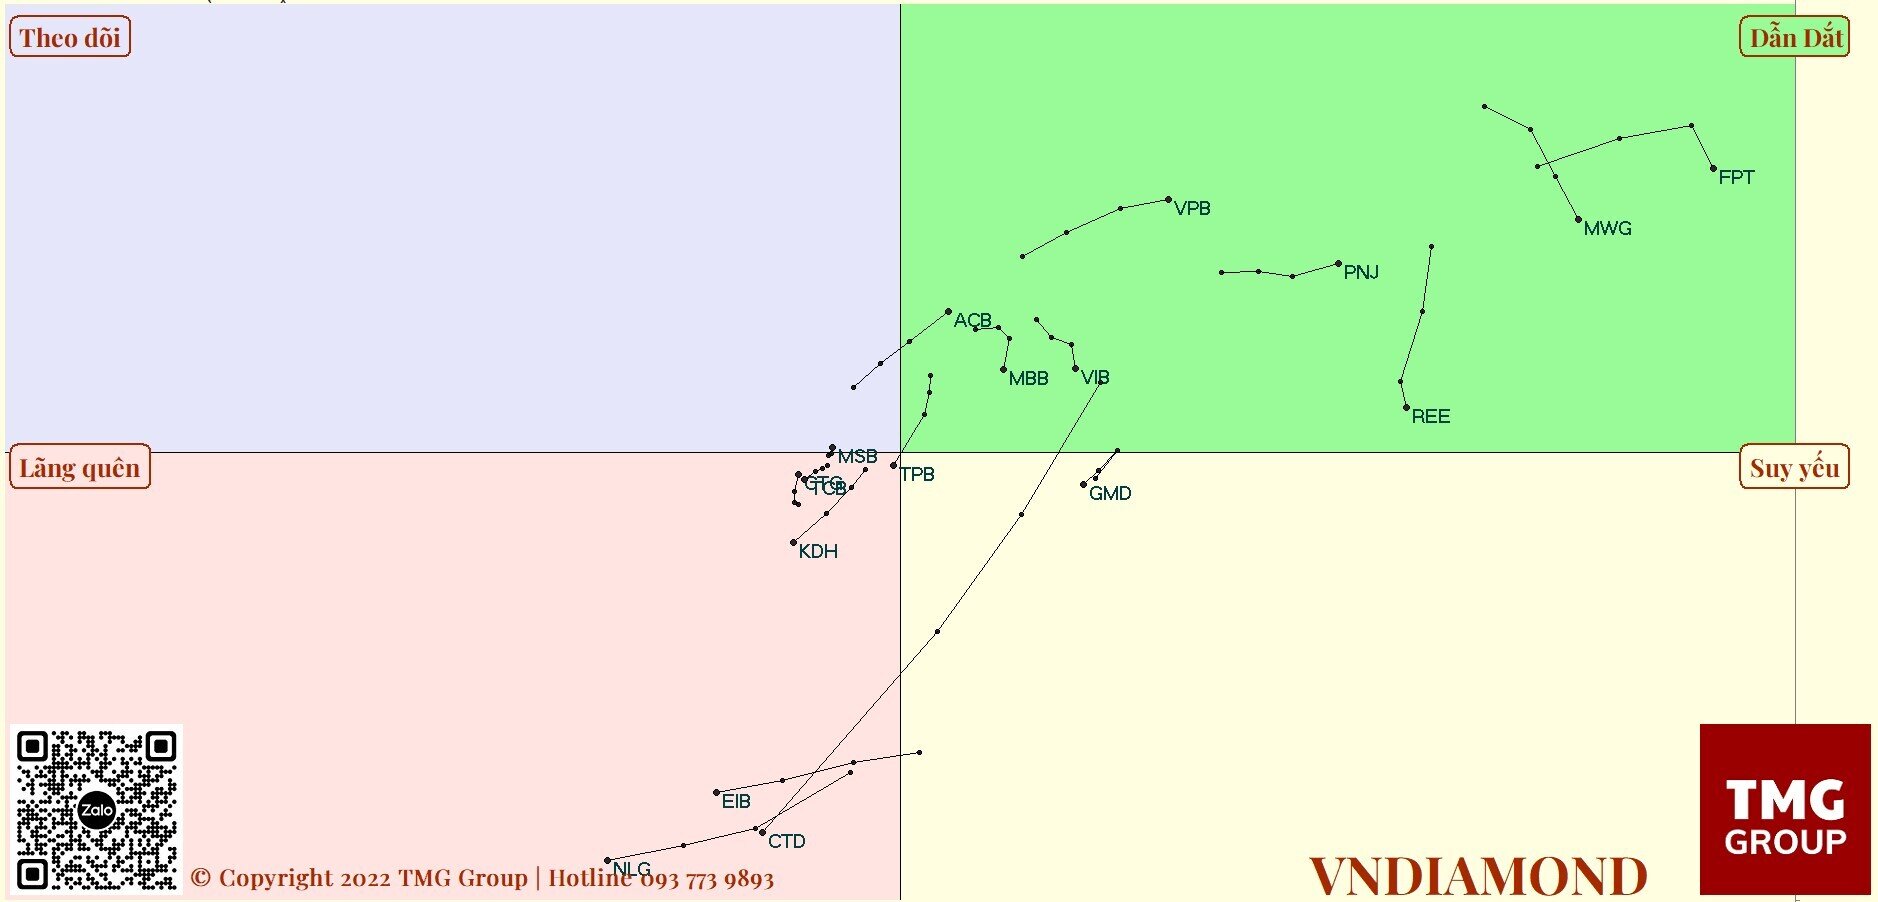 Vn-Index sẽ tiếp tục sideway vùng 1440 - 1530 thay vì downtrend, khuyến nghị tập trung MWG, FPT, PNJ, VPB